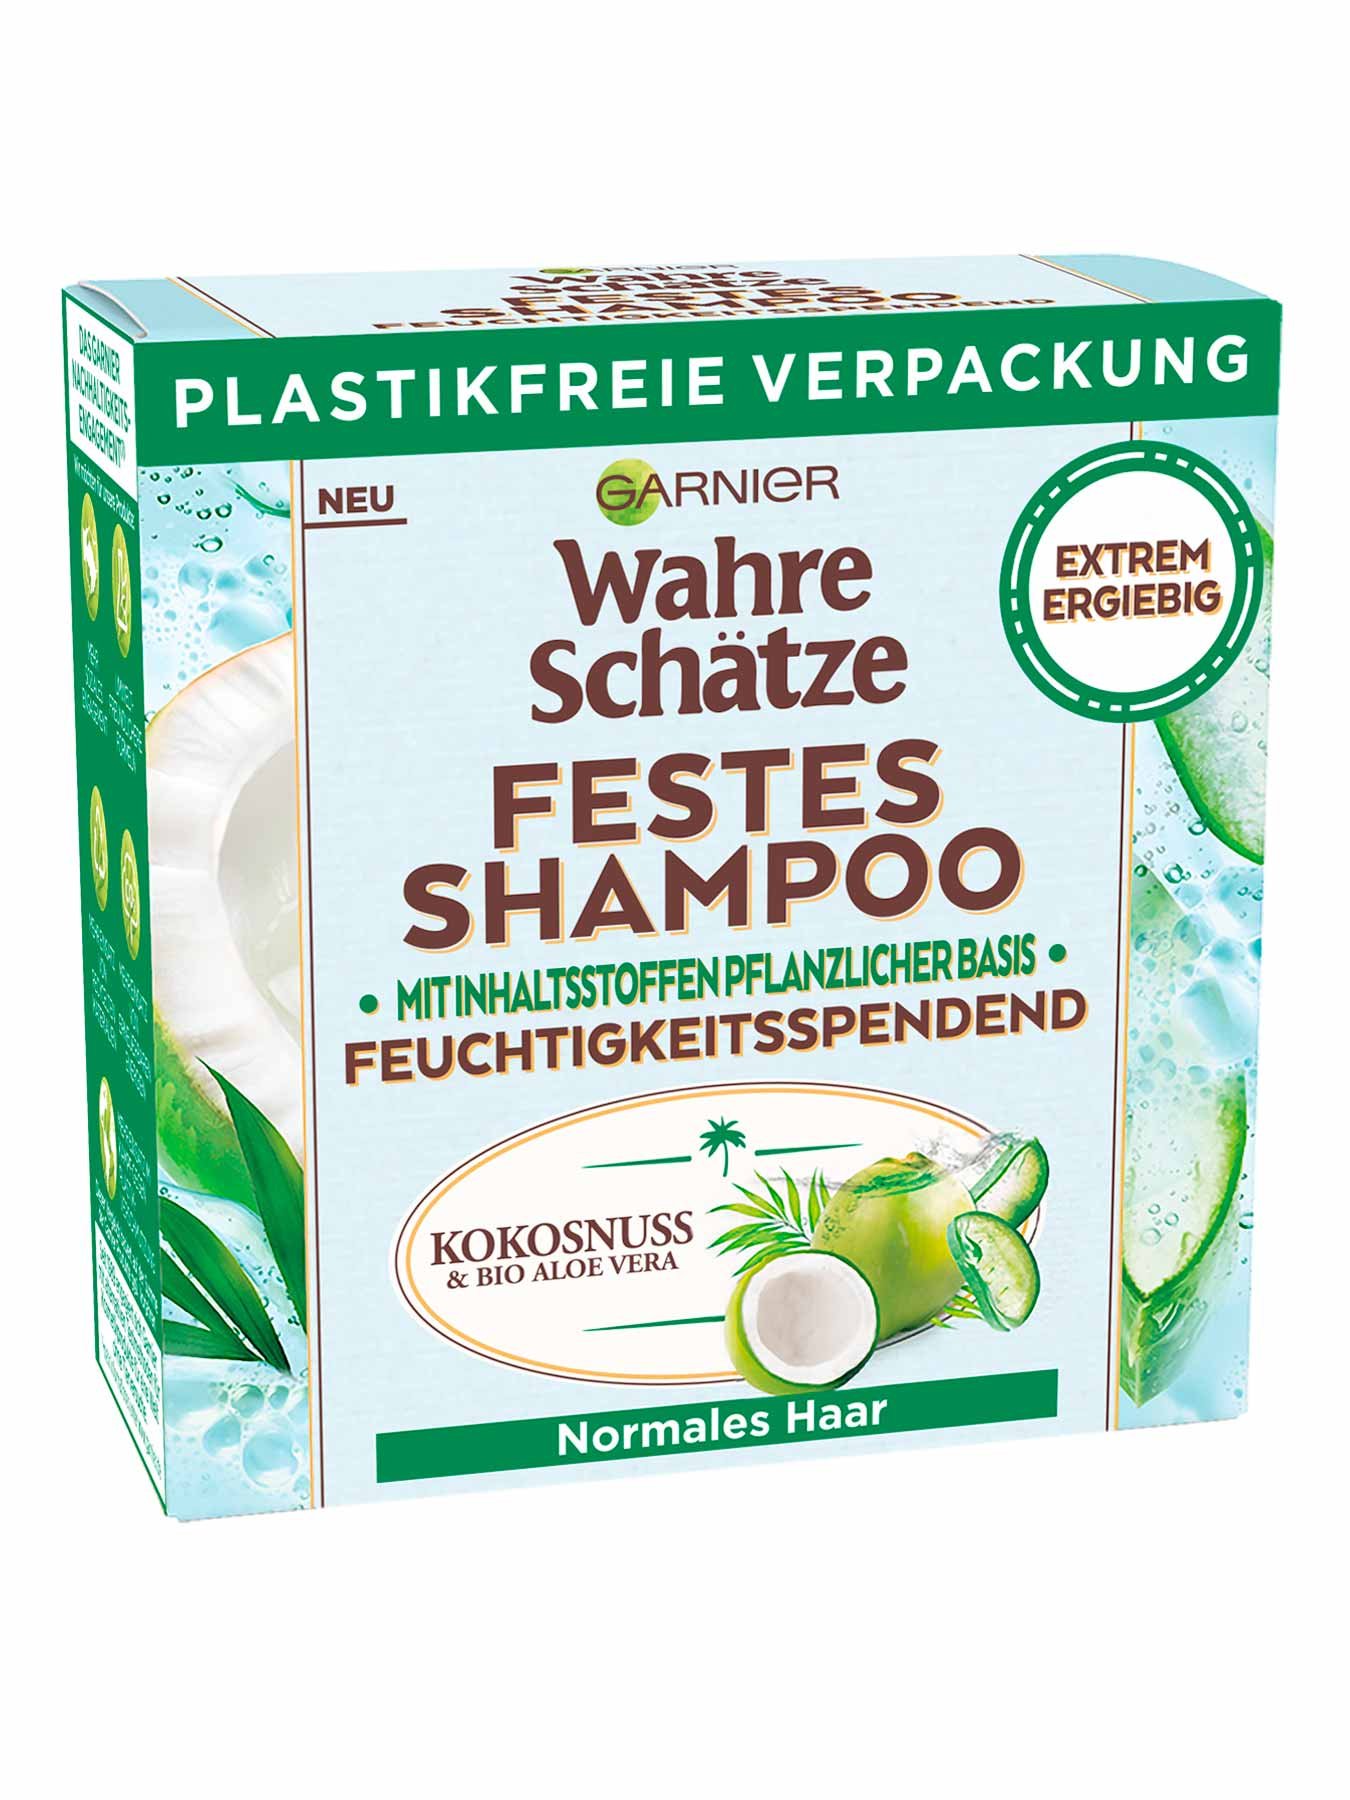 Festes Shampoo Vera| Garnier Kokosnuss & Aloe